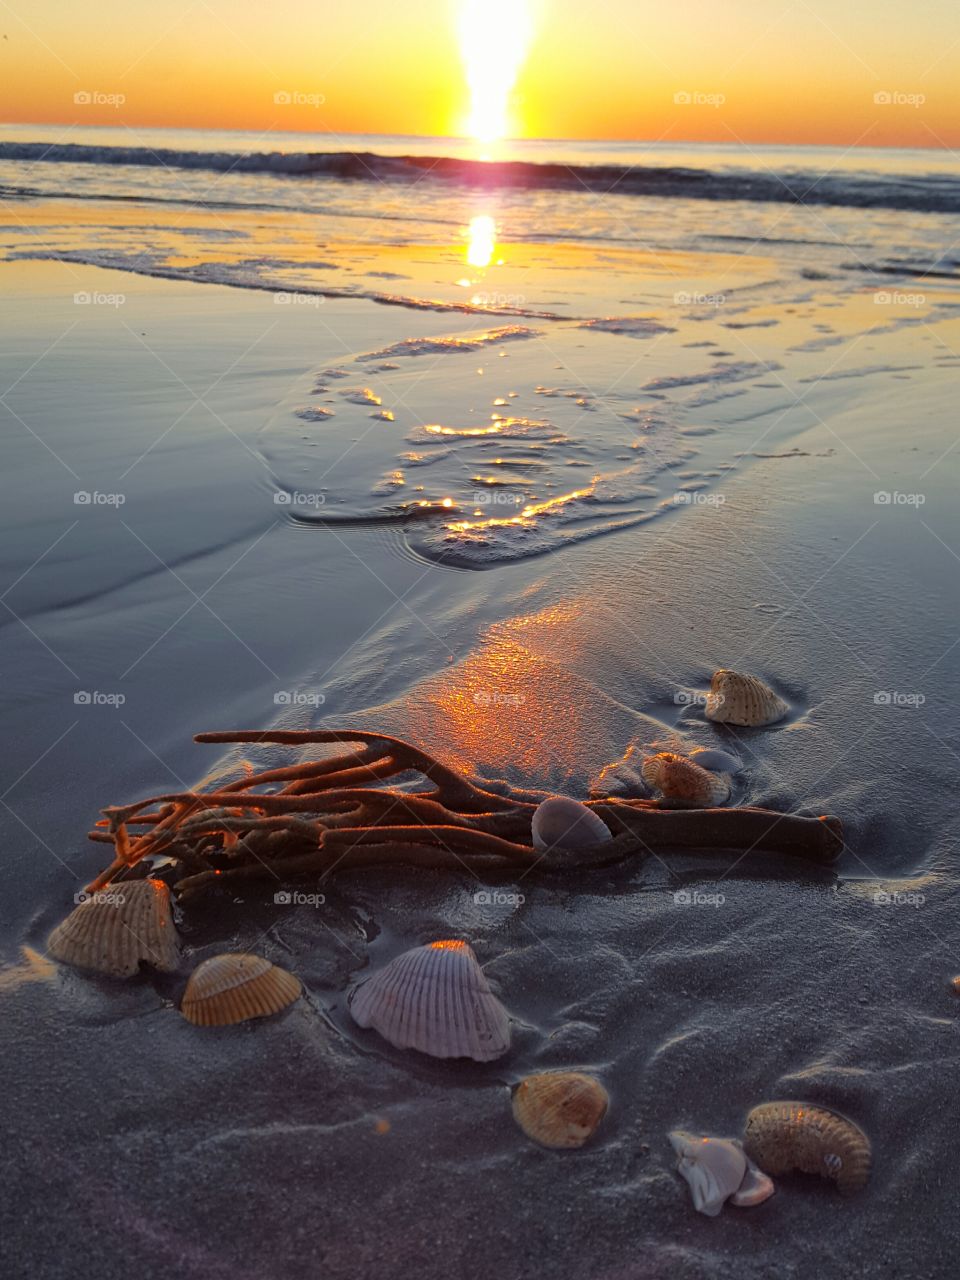 seashells on the seashore at sunrise